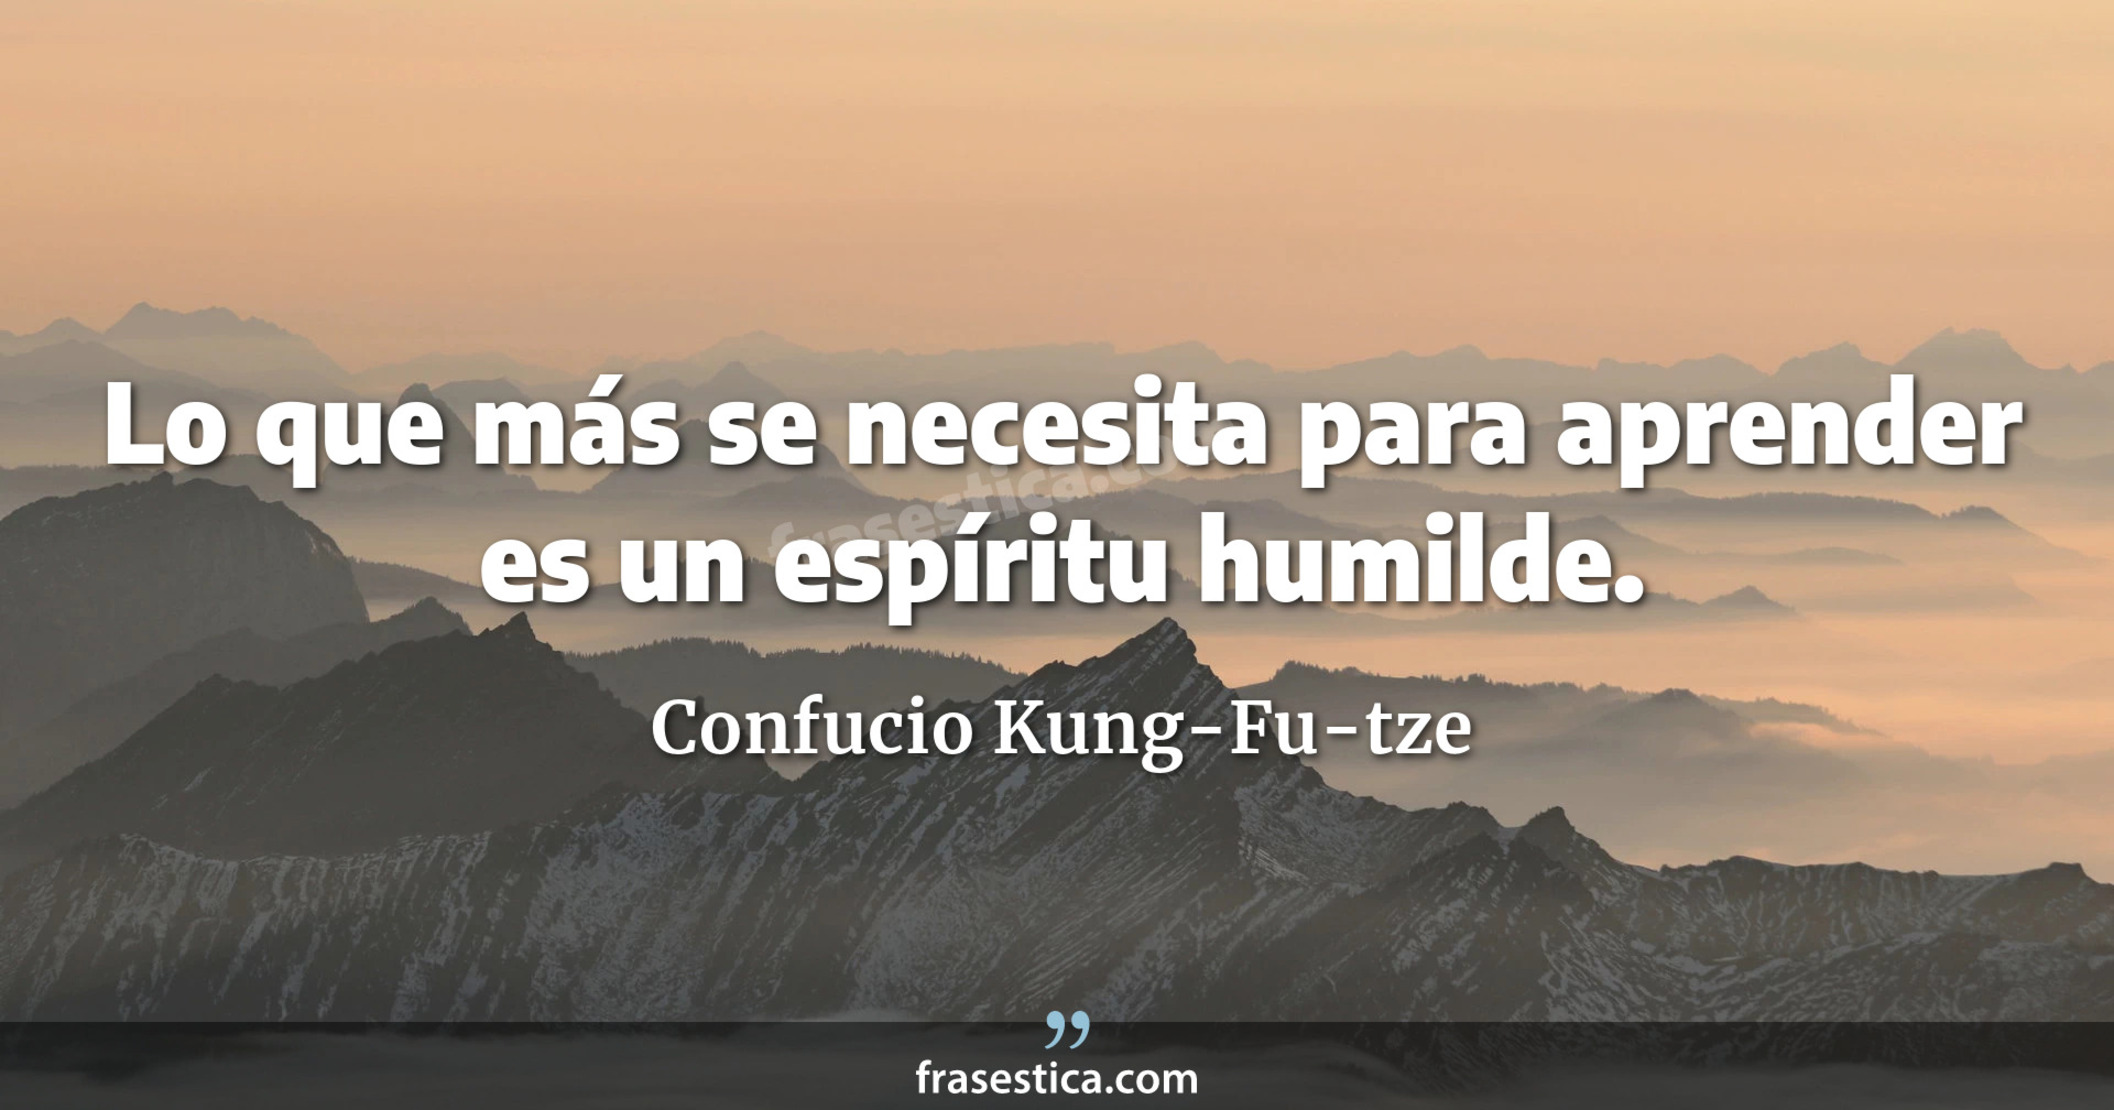 Lo que más se necesita para aprender es un espíritu humilde. - Confucio Kung-Fu-tze